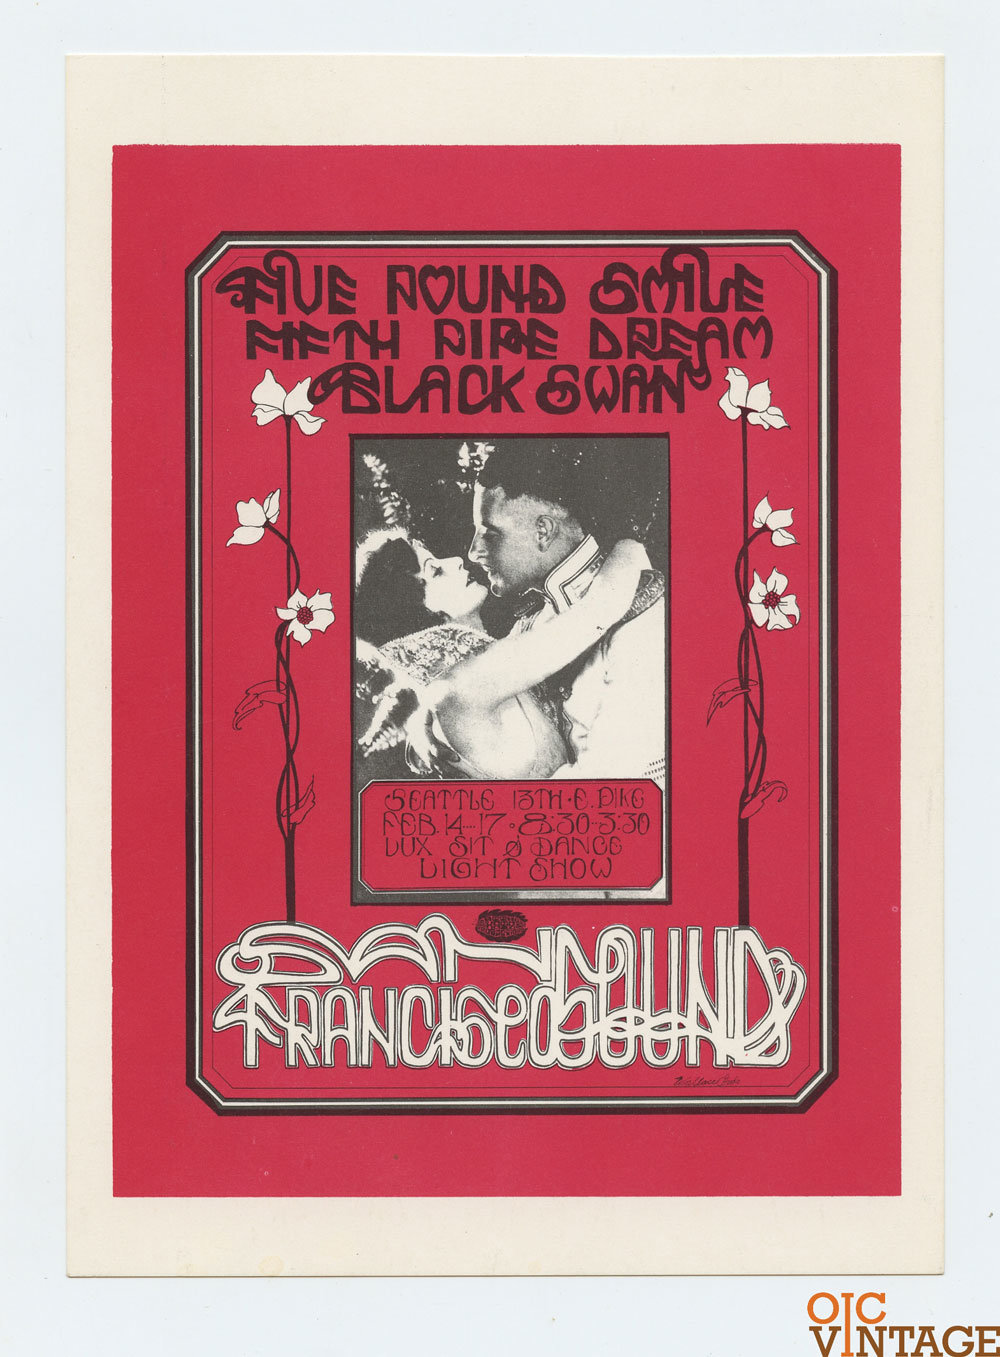 San Francisco Sound Postcard 1968 Feb 16 Five Pound Smile